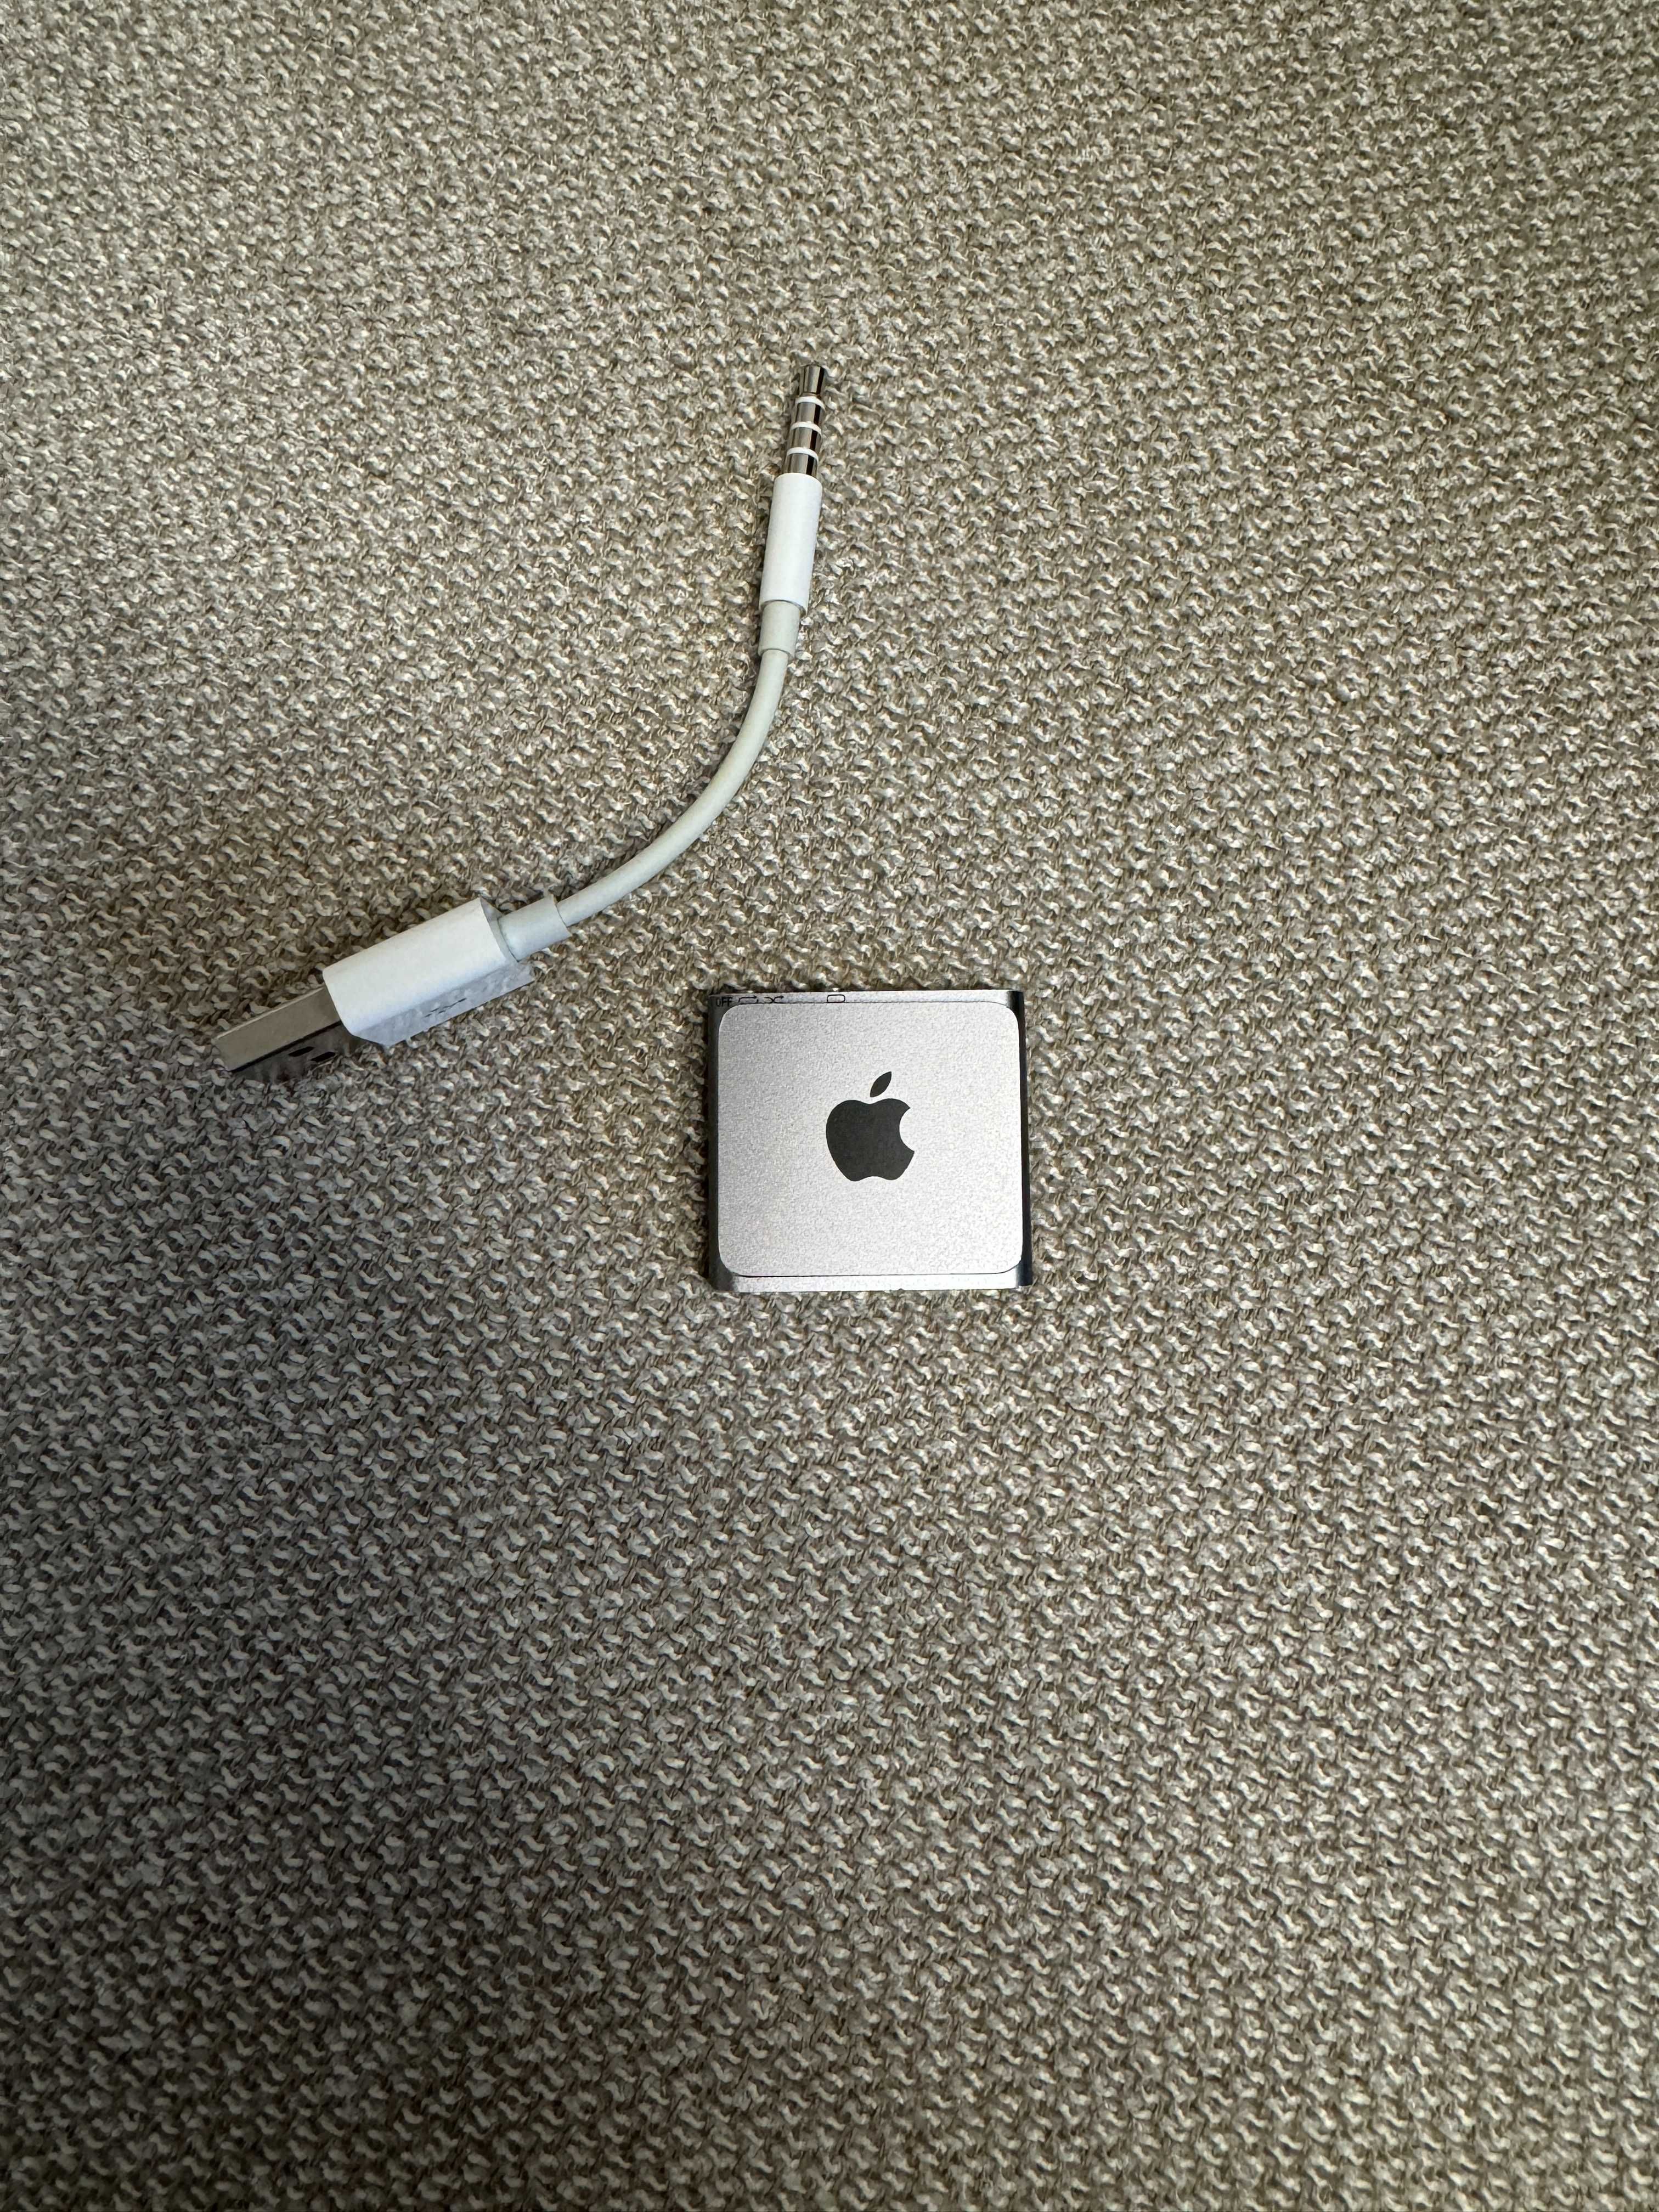 Apple iPod Shuffle 4 gen Space Gray - 2gb, PL dystrybucja, uzywany